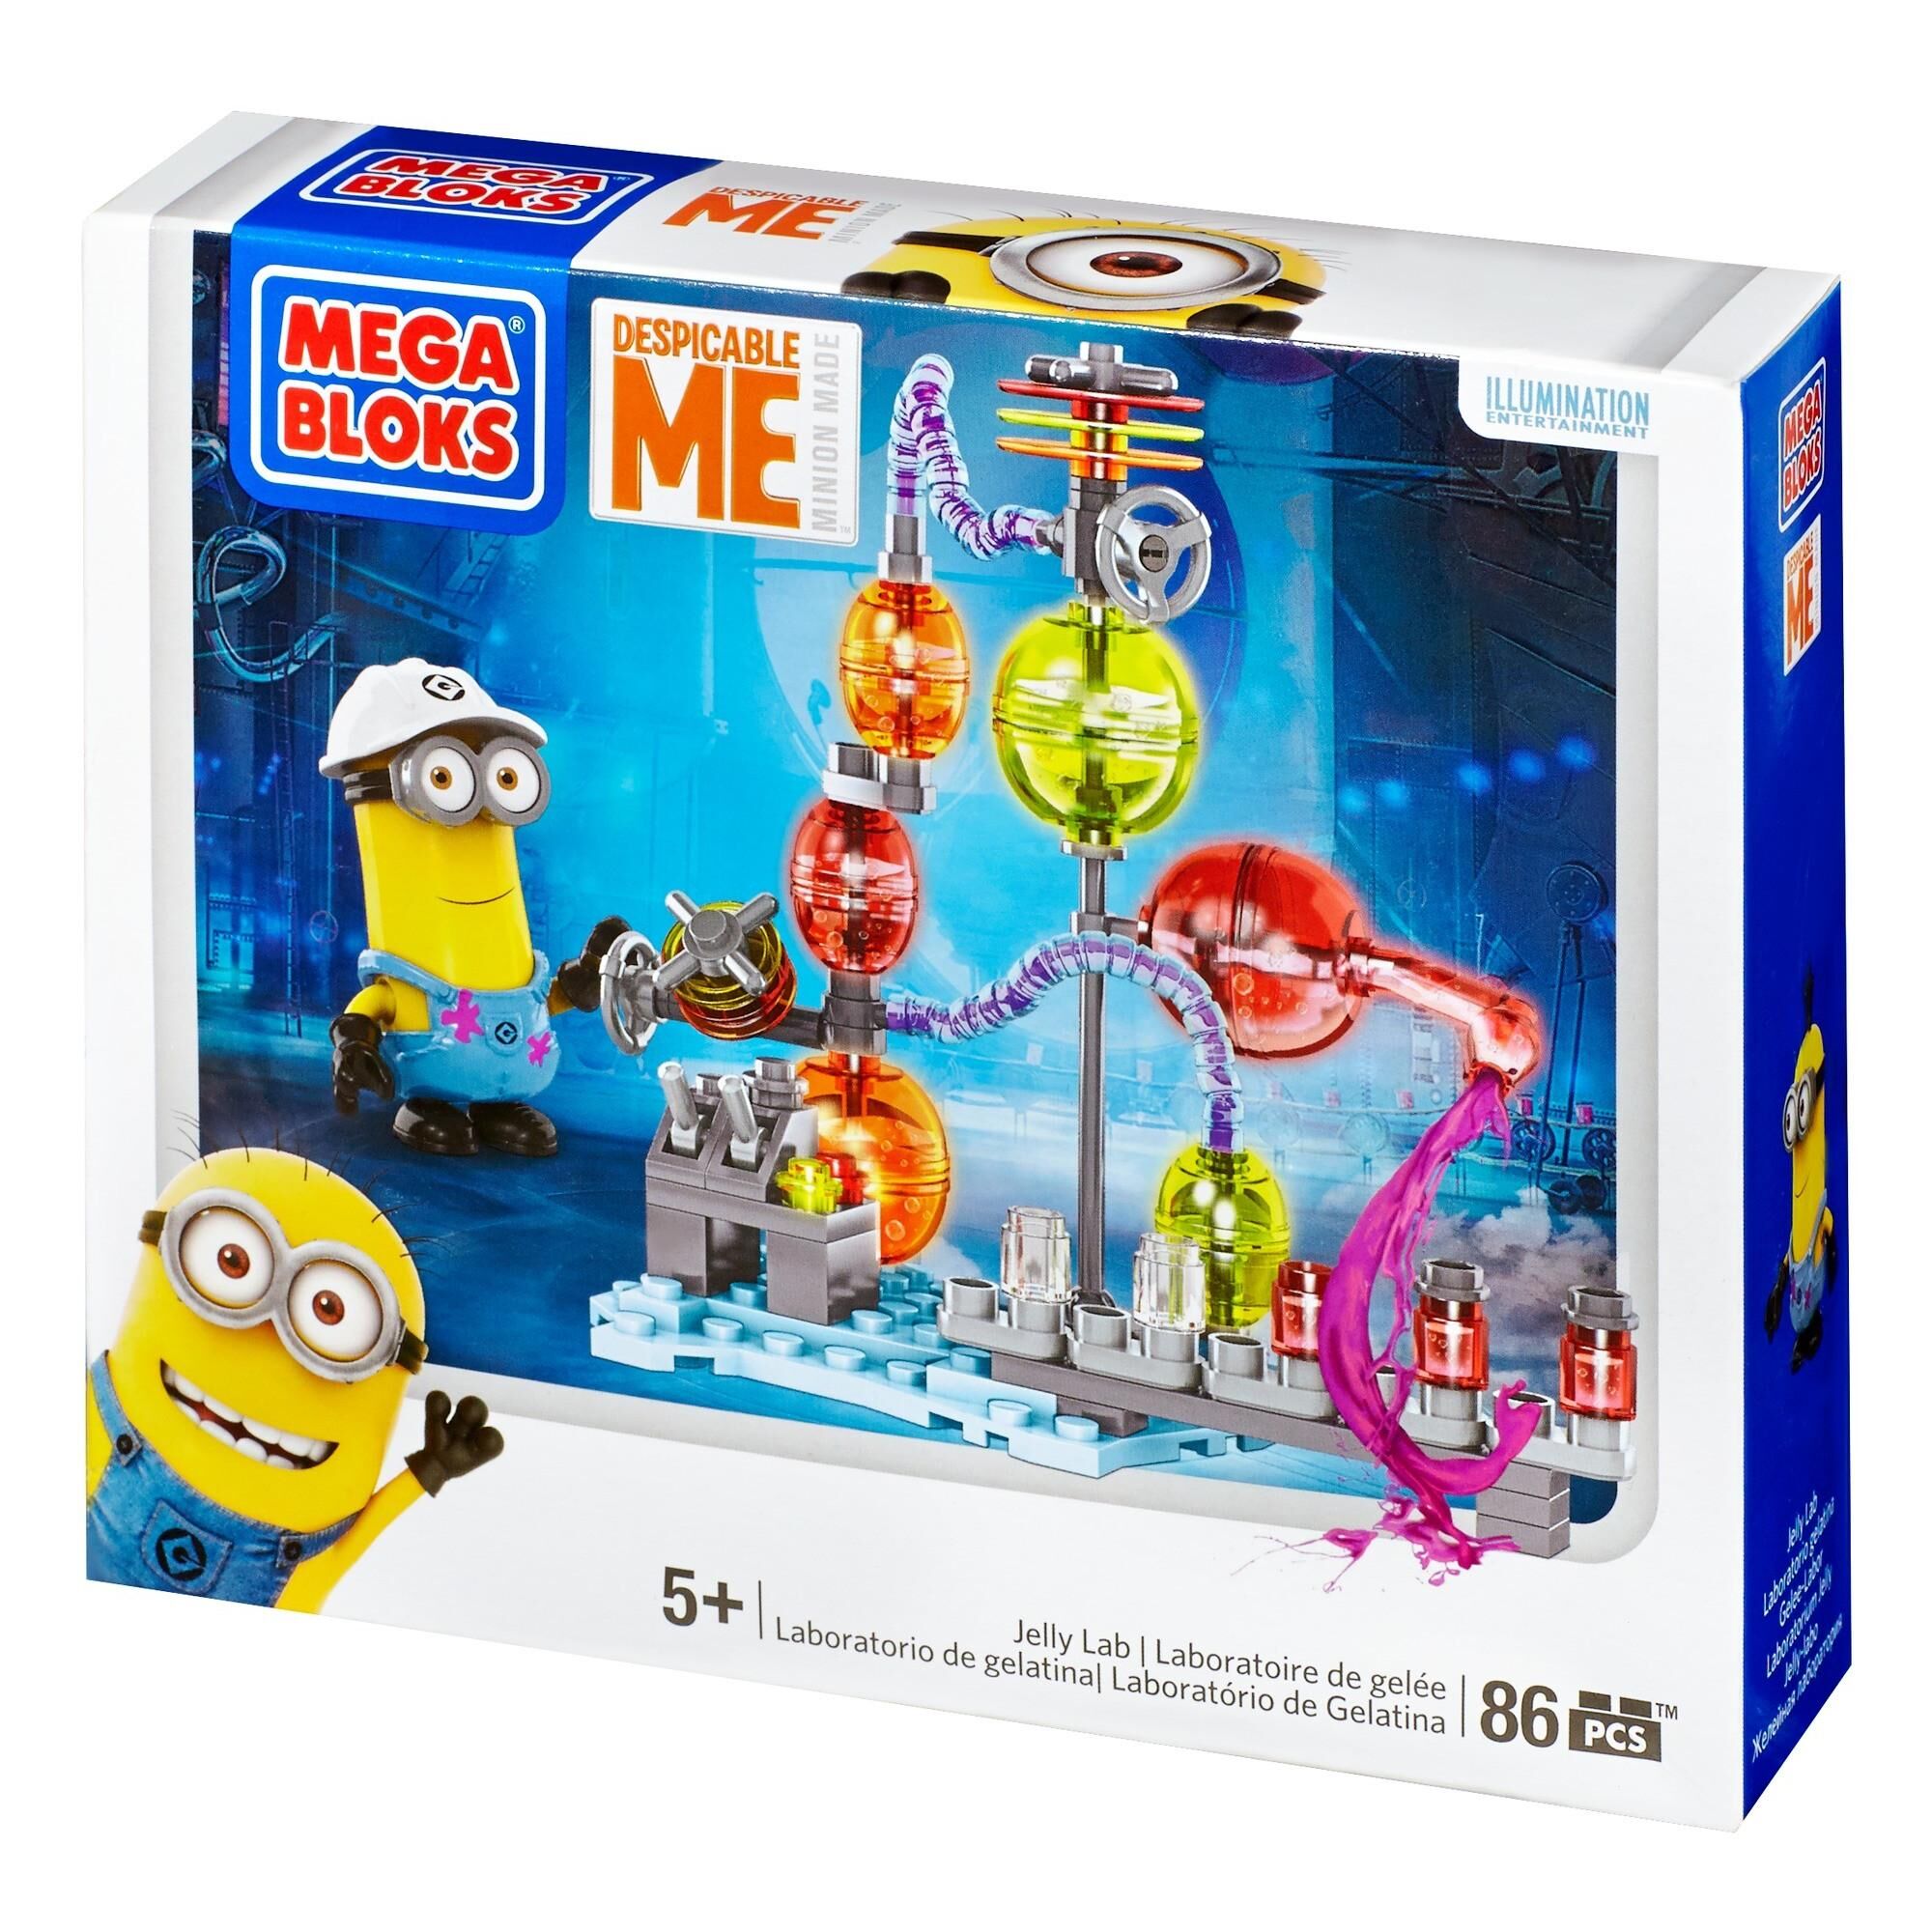 Minions Mega Bloks 86-Piece Construction Set, Despicable Jelly Lab